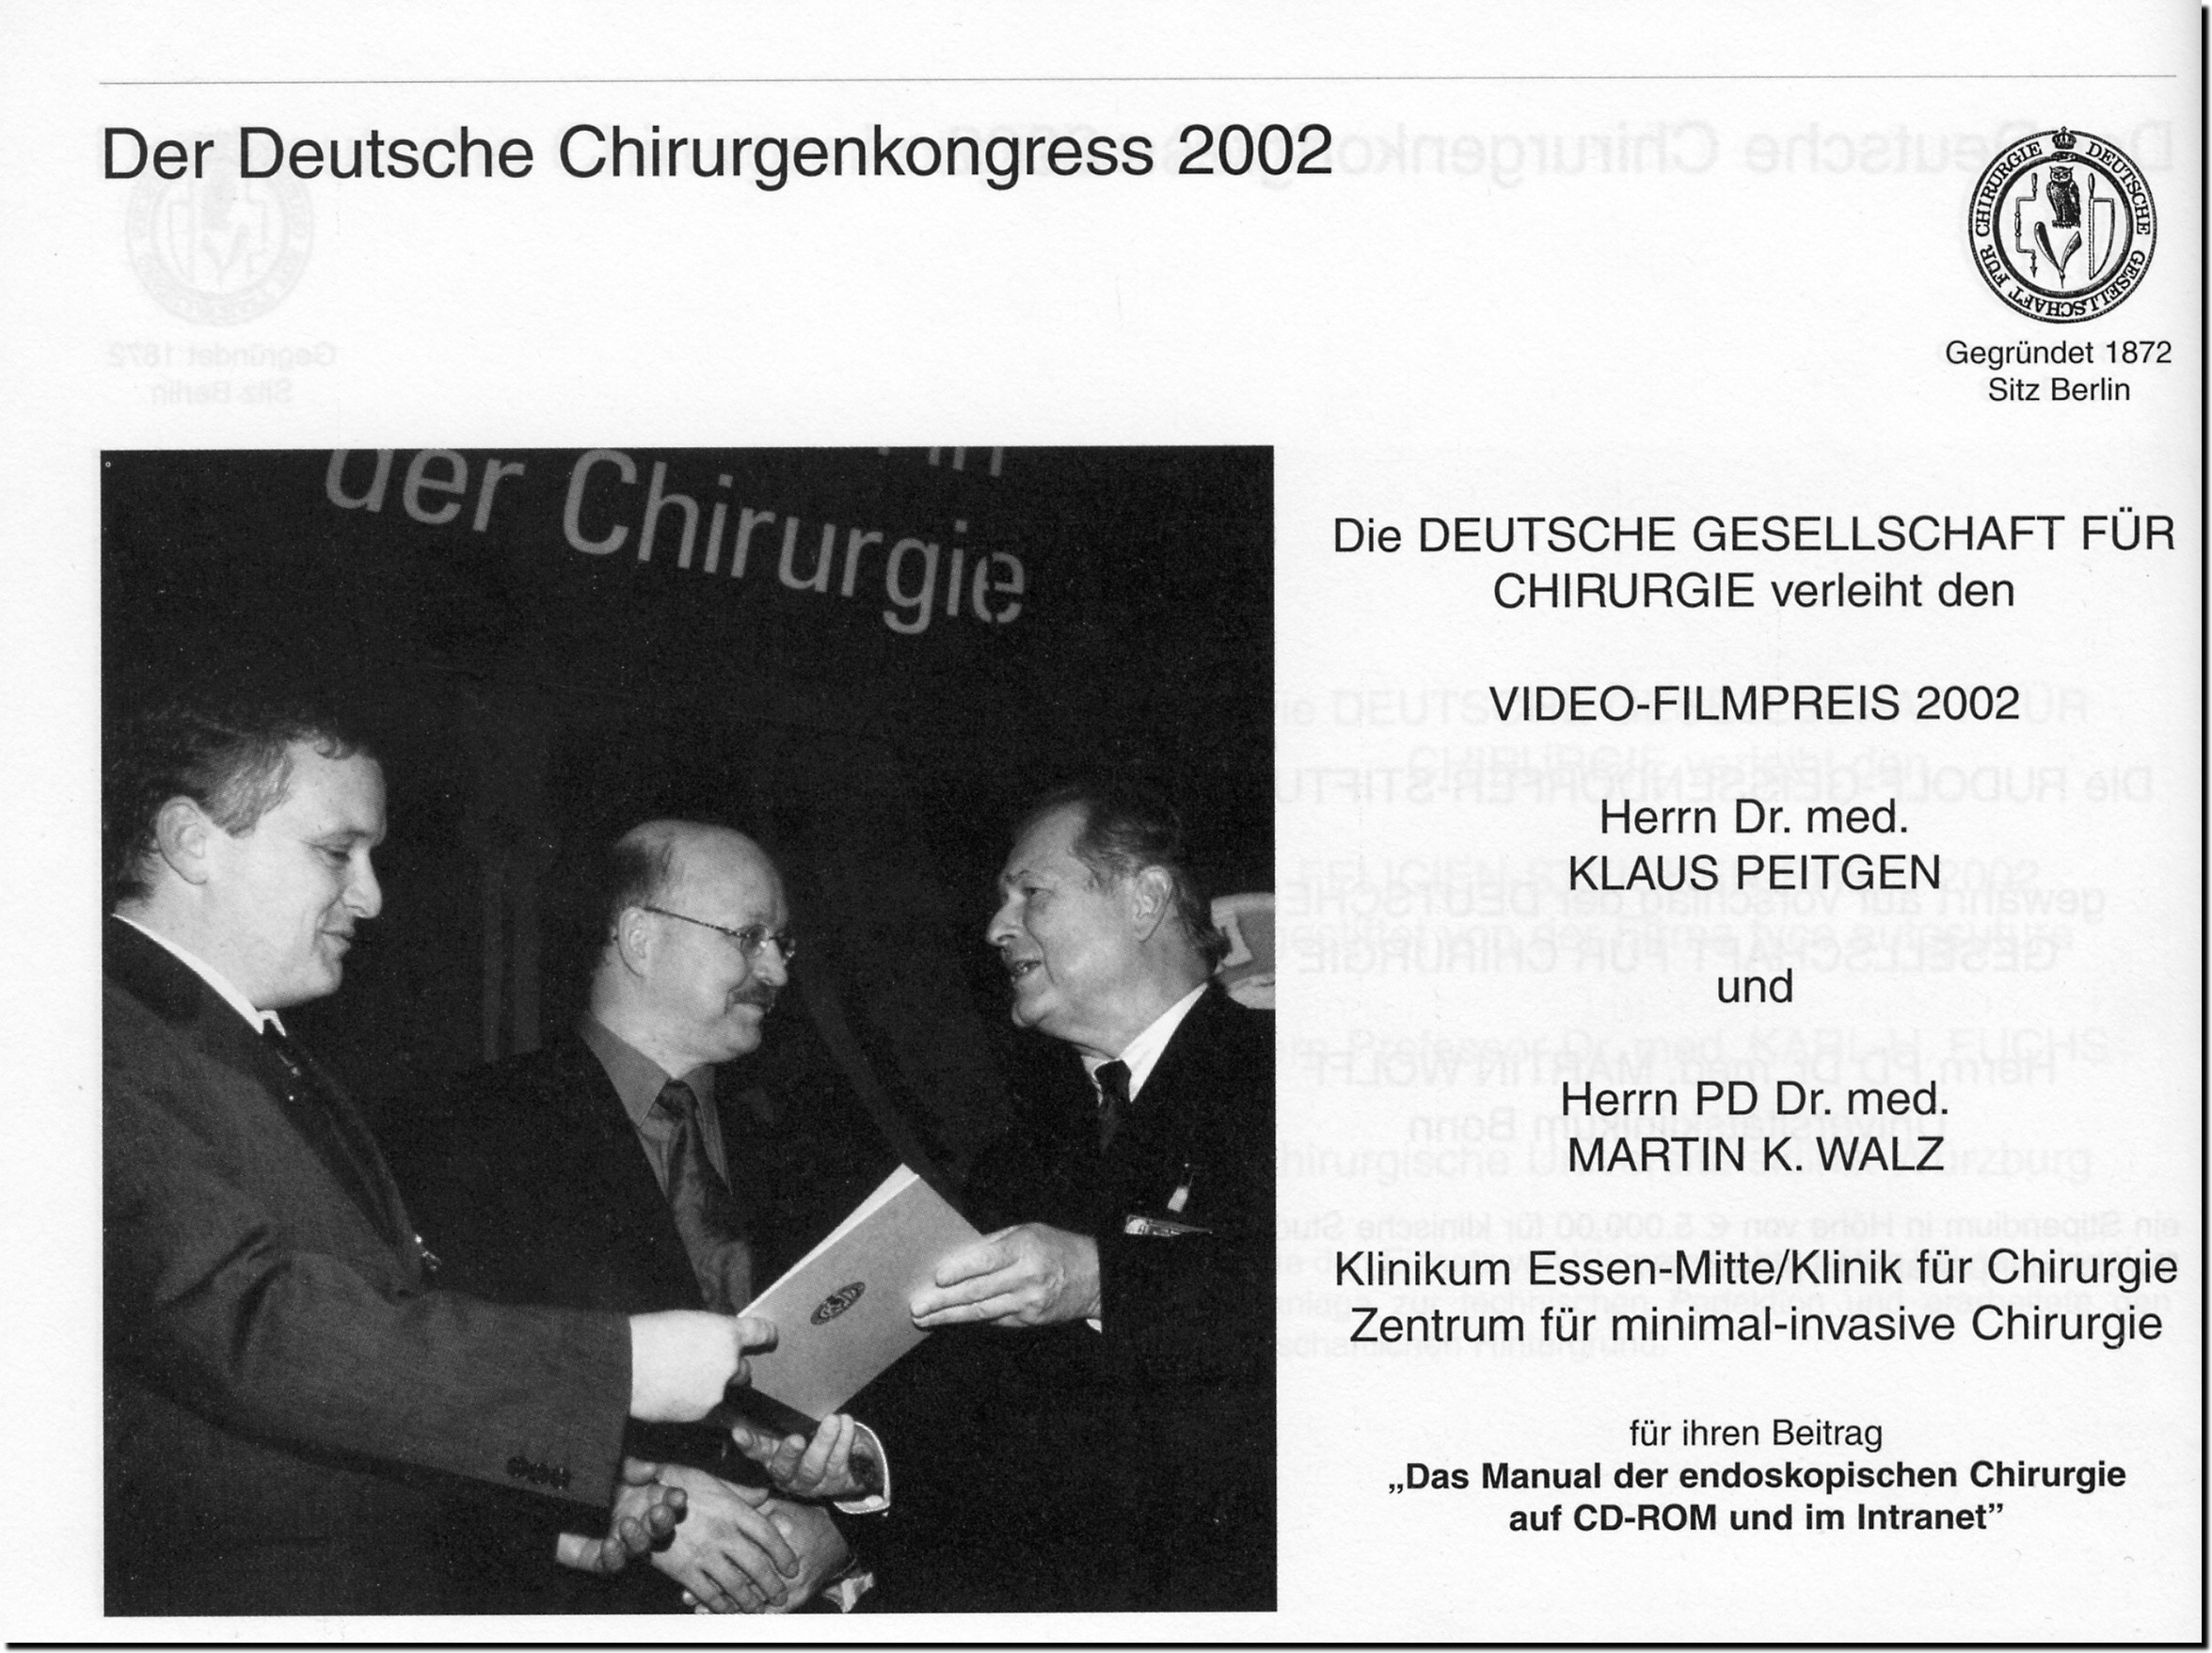 Preisverleihung durch Prof.Dr.med J.R. Siewert auf dem Deutschen Chirurgenkongress 2002